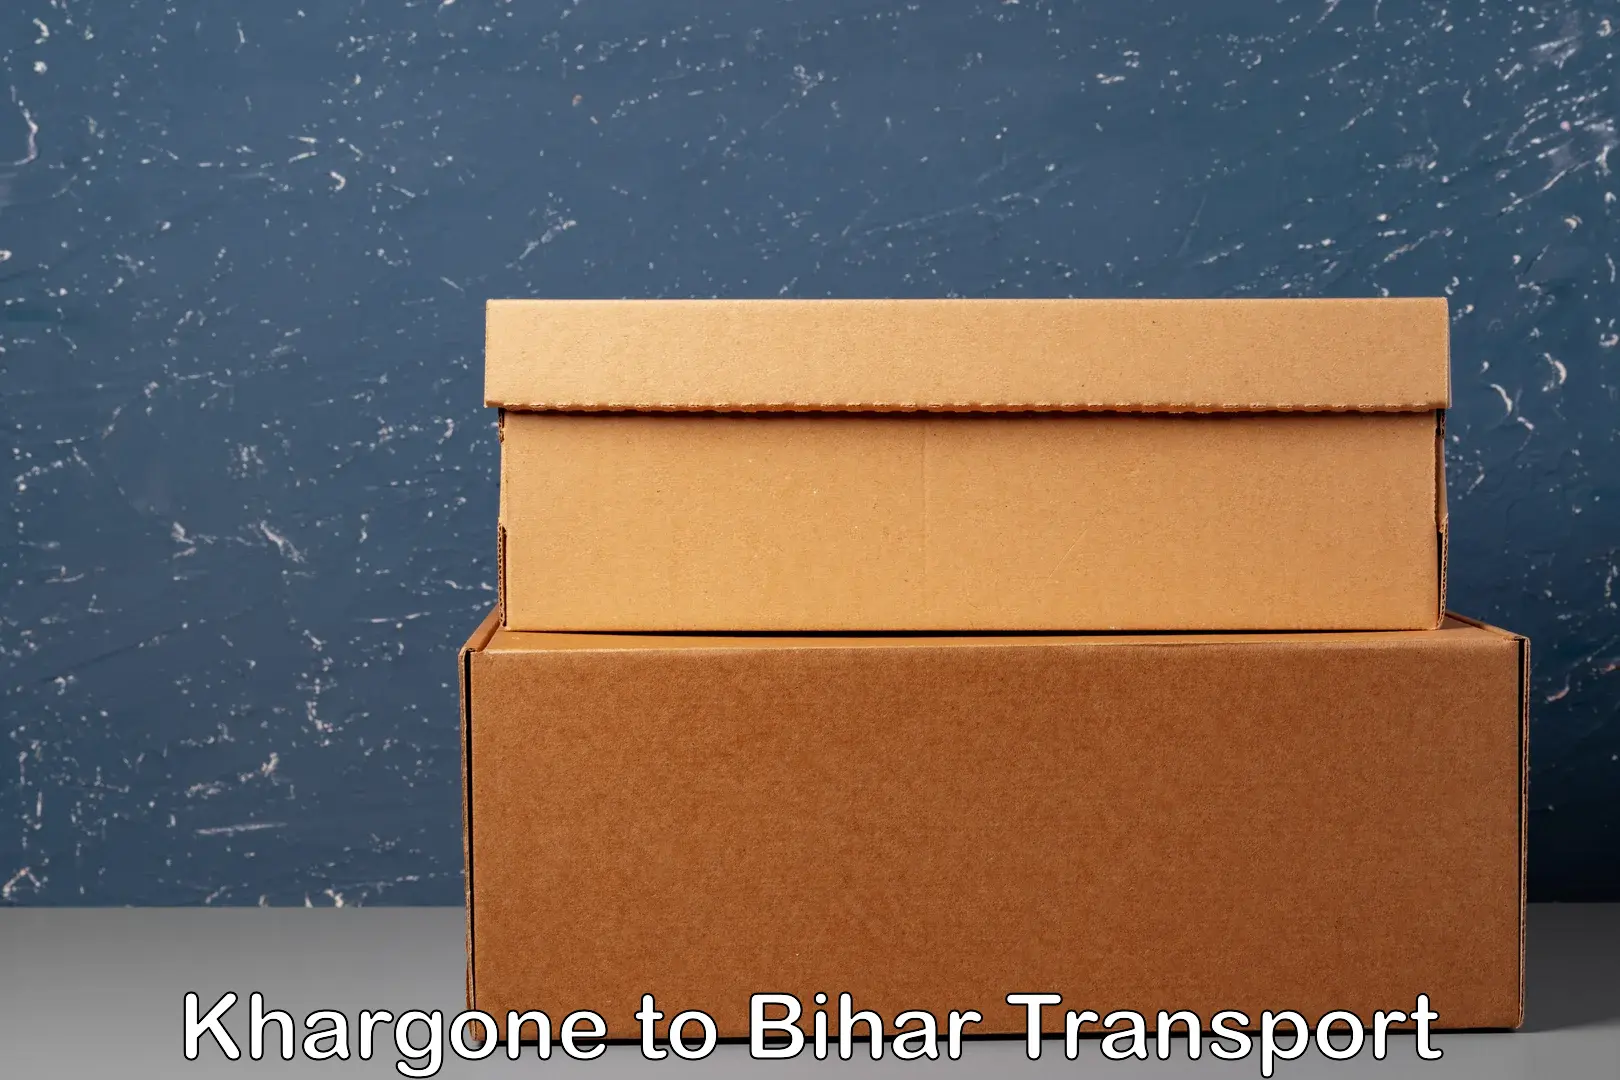 Nearest transport service in Khargone to Bihar